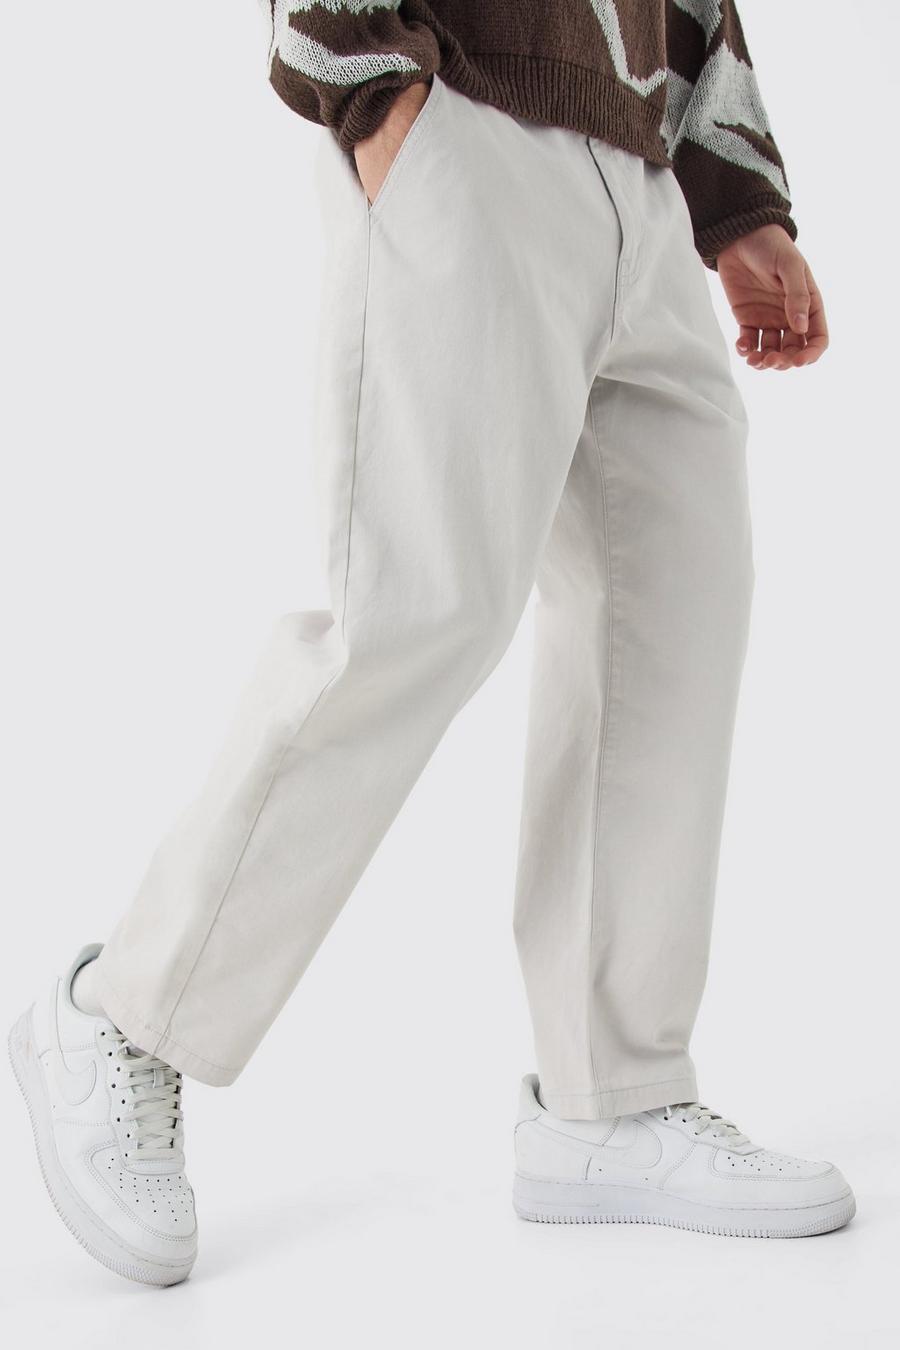 Pantaloni Chino alla caviglia stile Skate con vita fissa e logo, Ecru